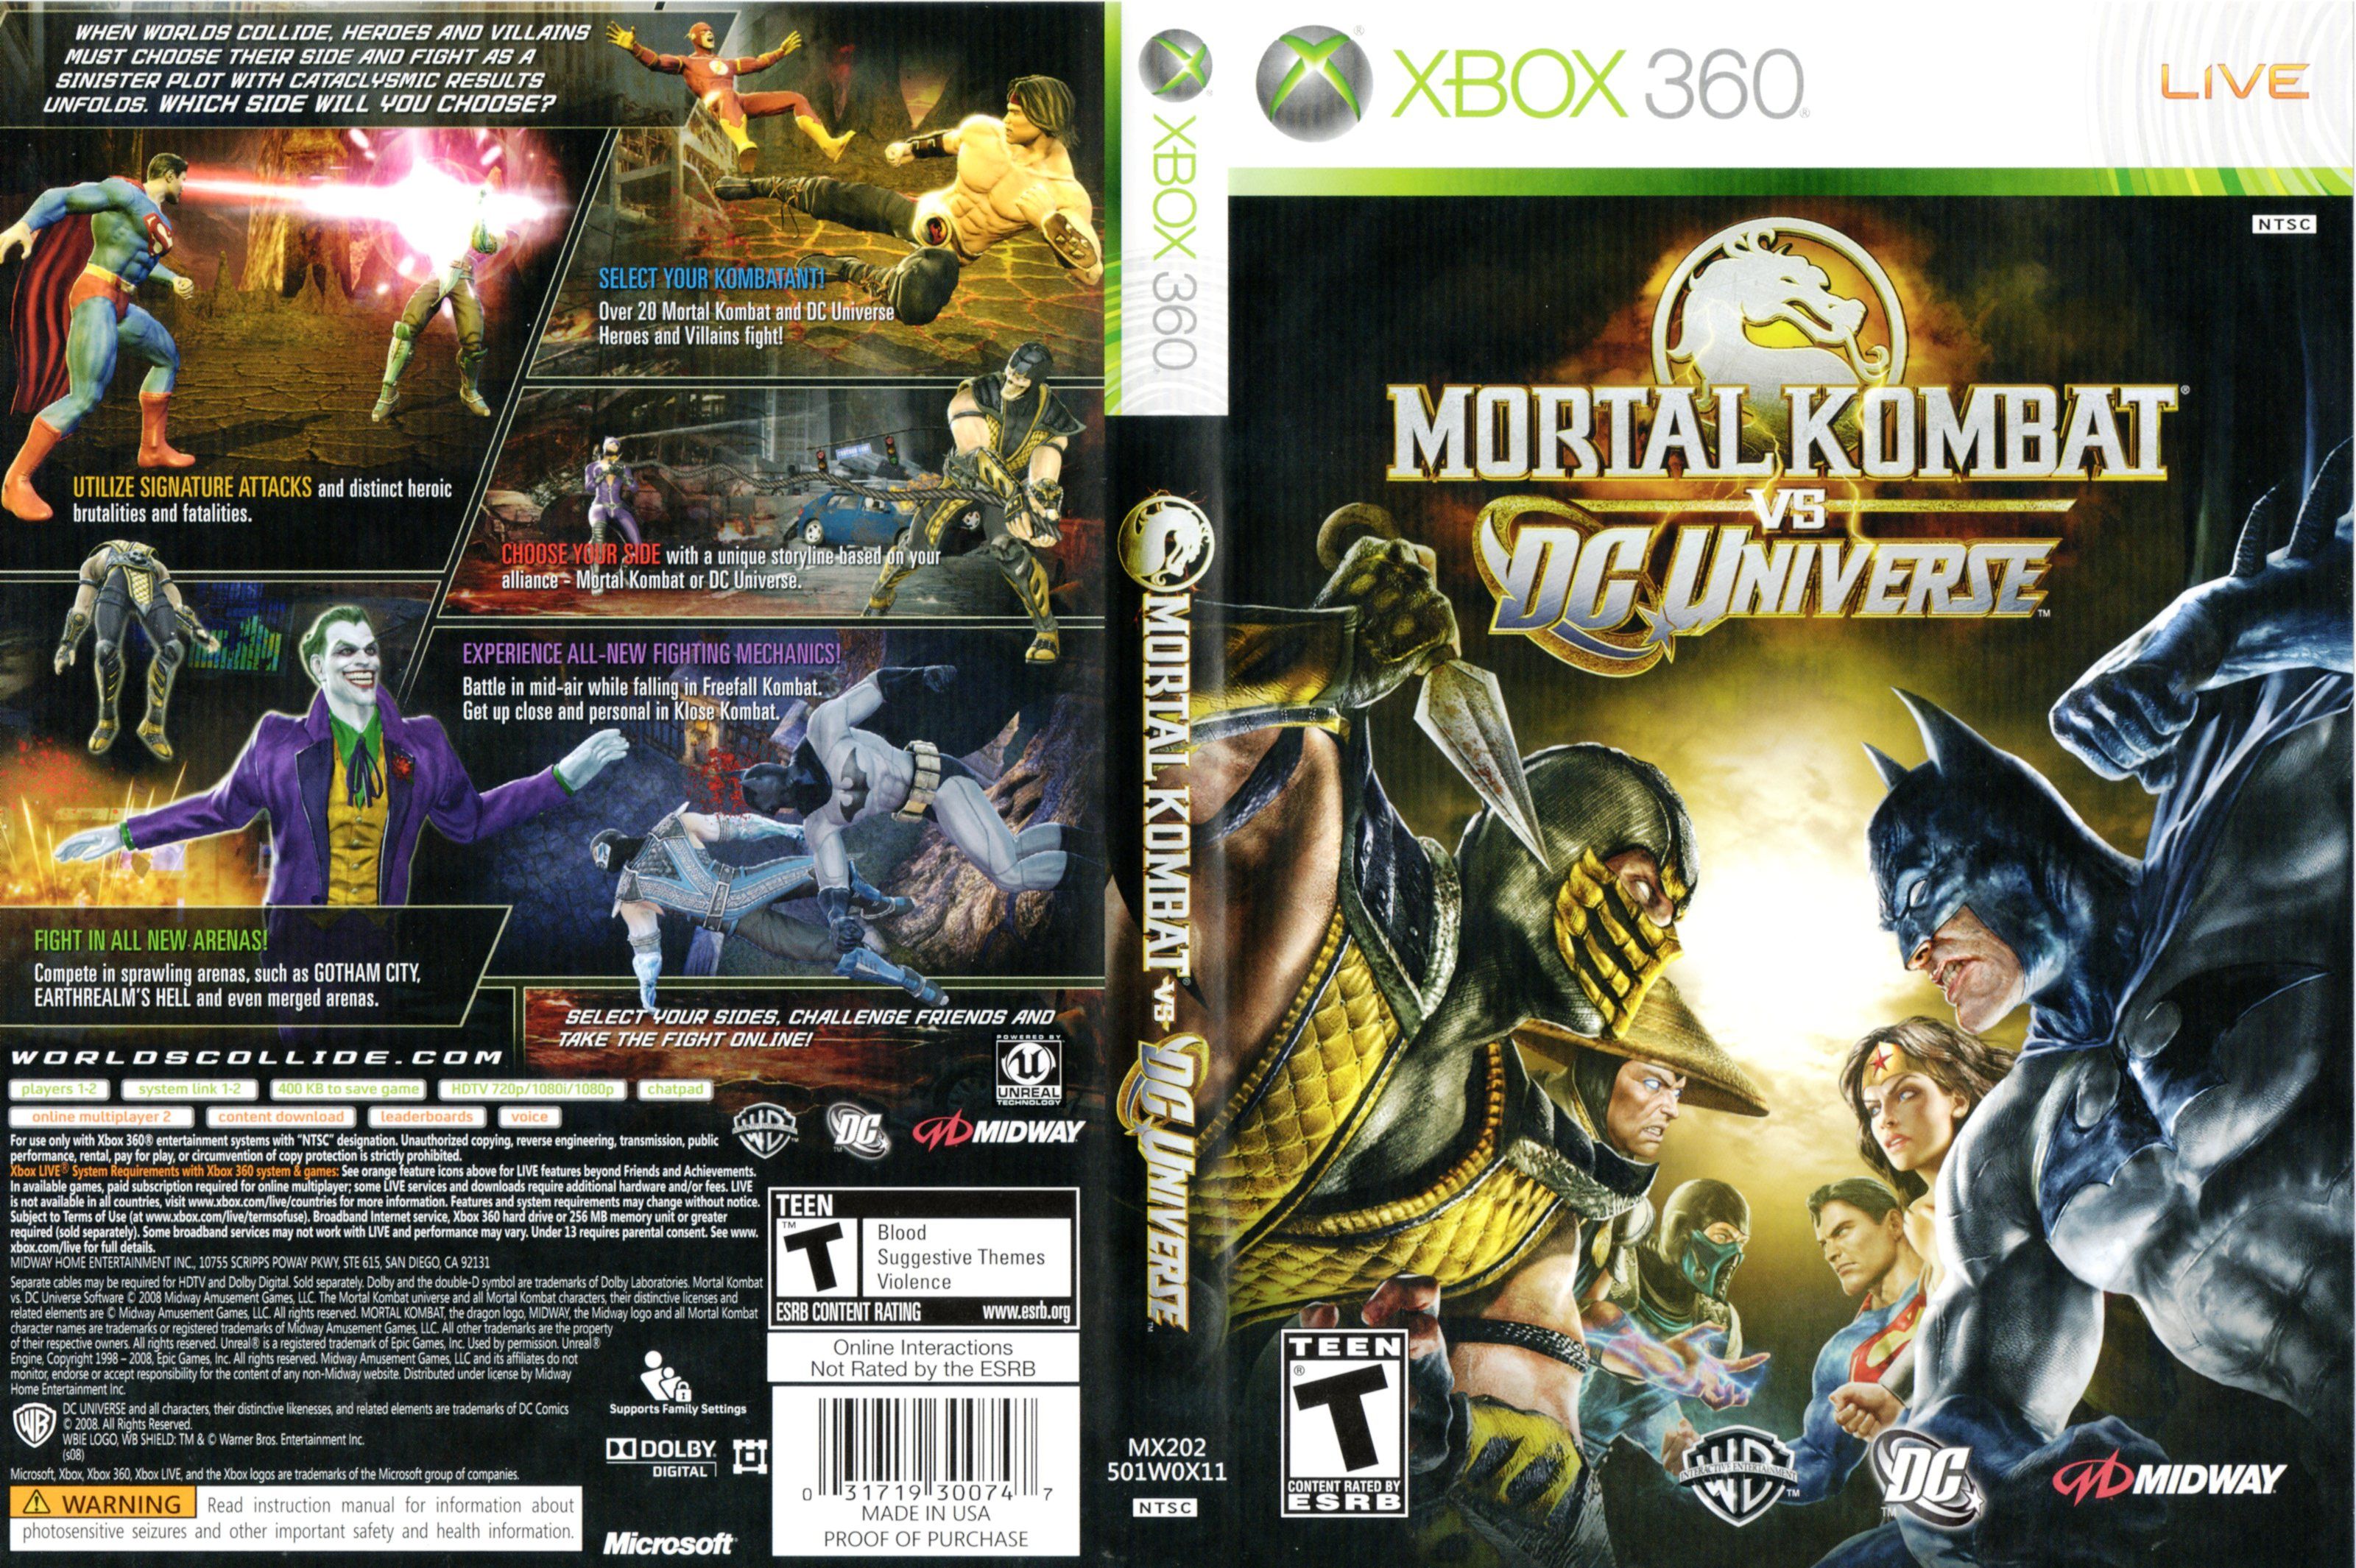 3200x2130px Mortal Kombat Vs Dc Universe (1392.85 KB).02.2015